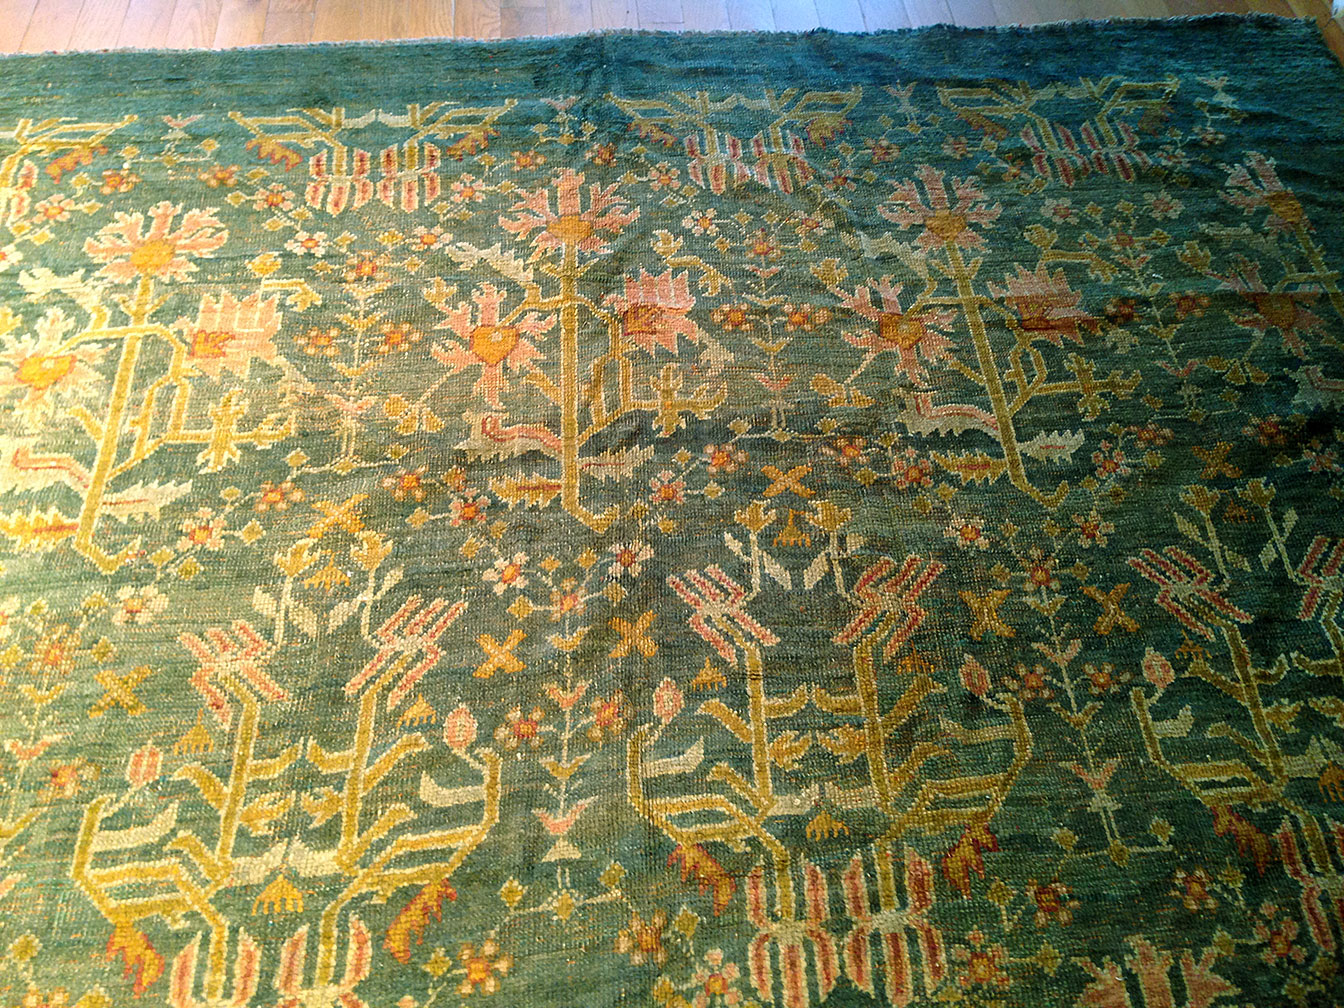 Antique oushak Carpet - # 50596